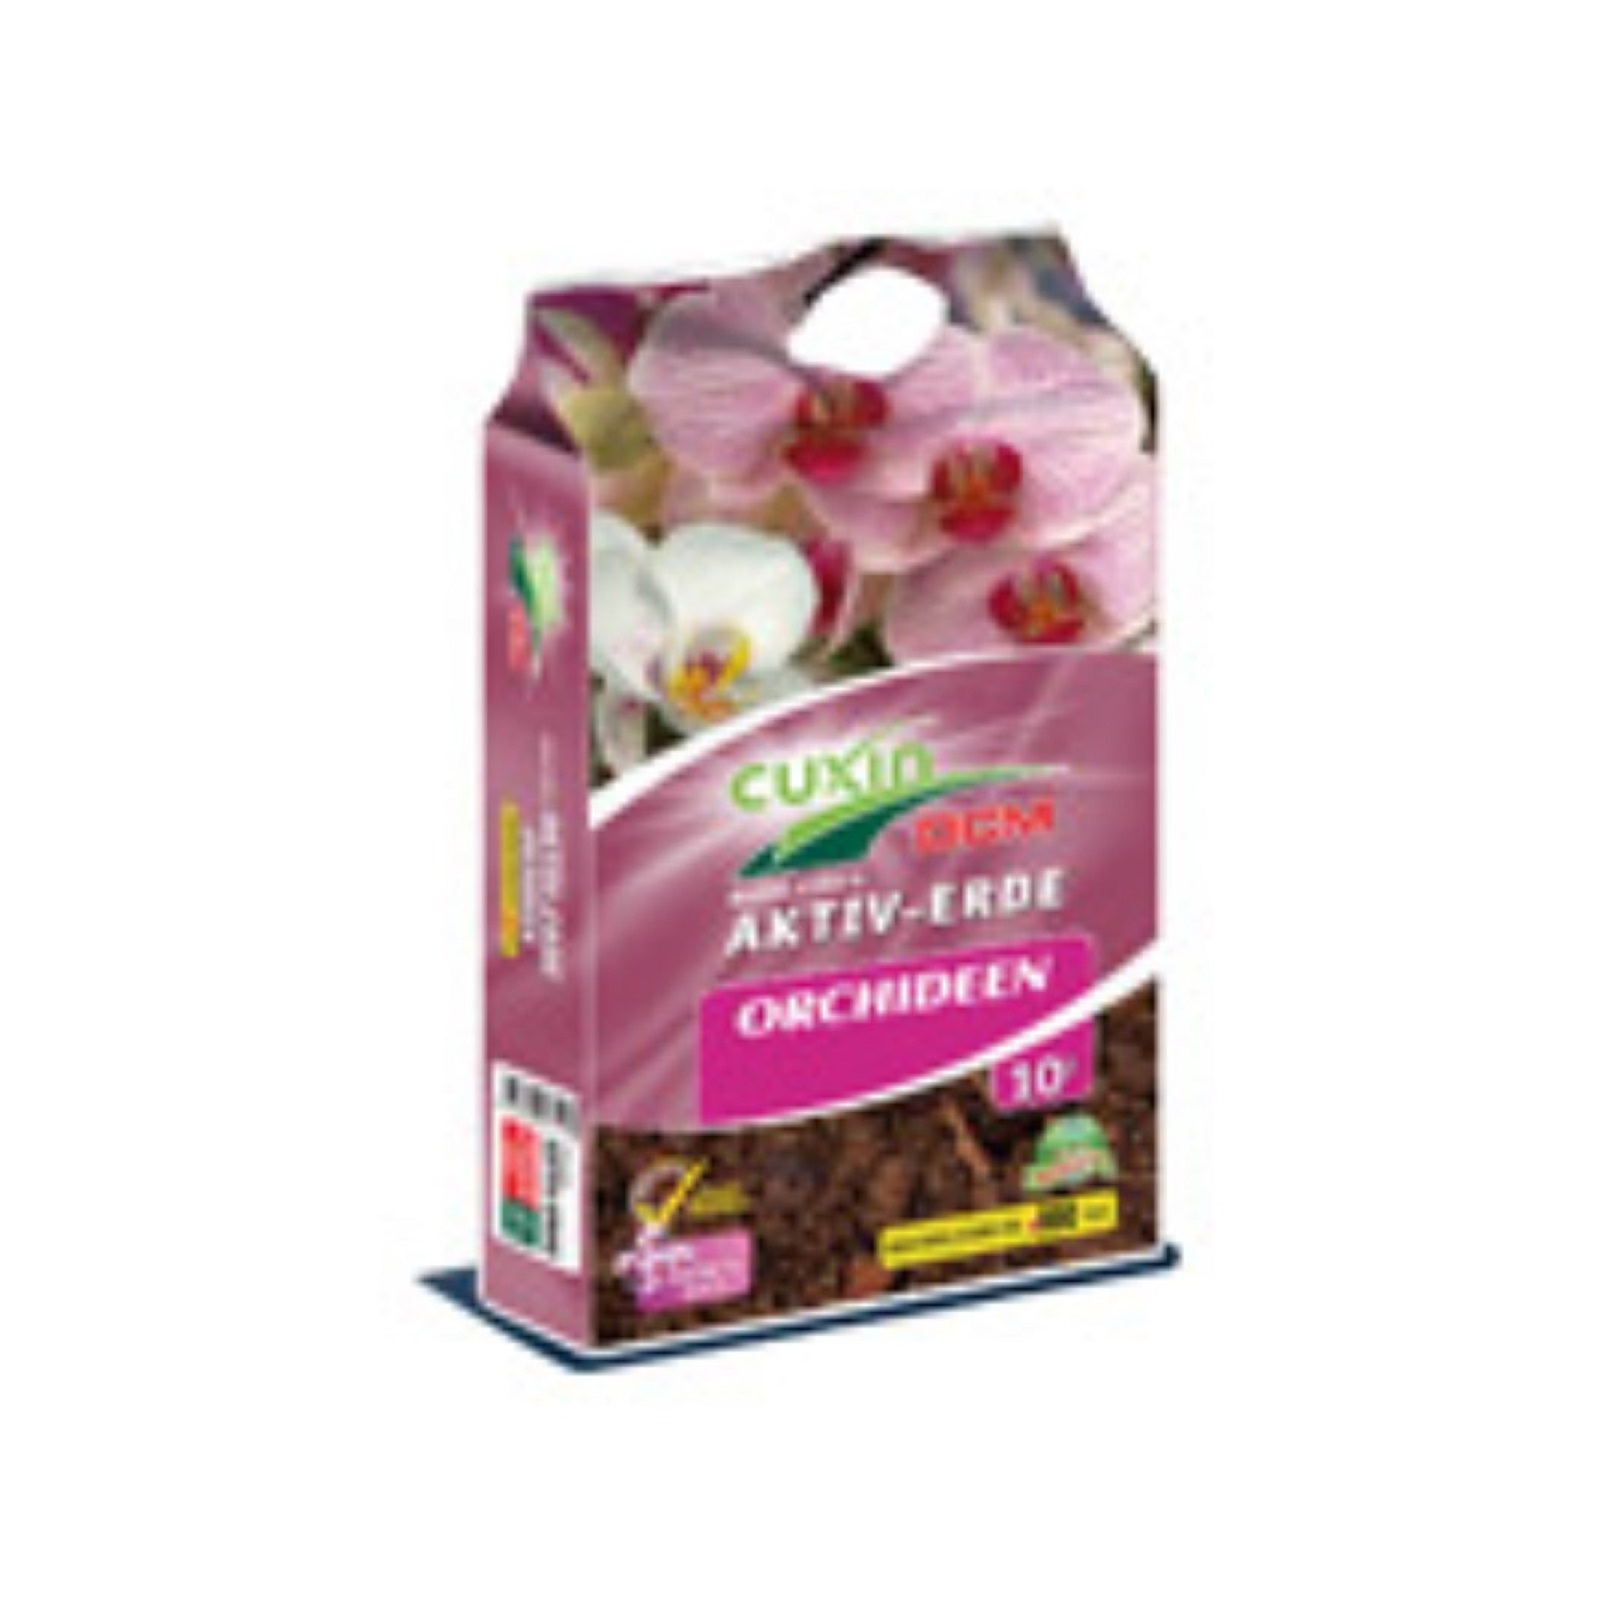 Cuxin DCM Aktiv-Erde Orchideen 2 x 5 liter